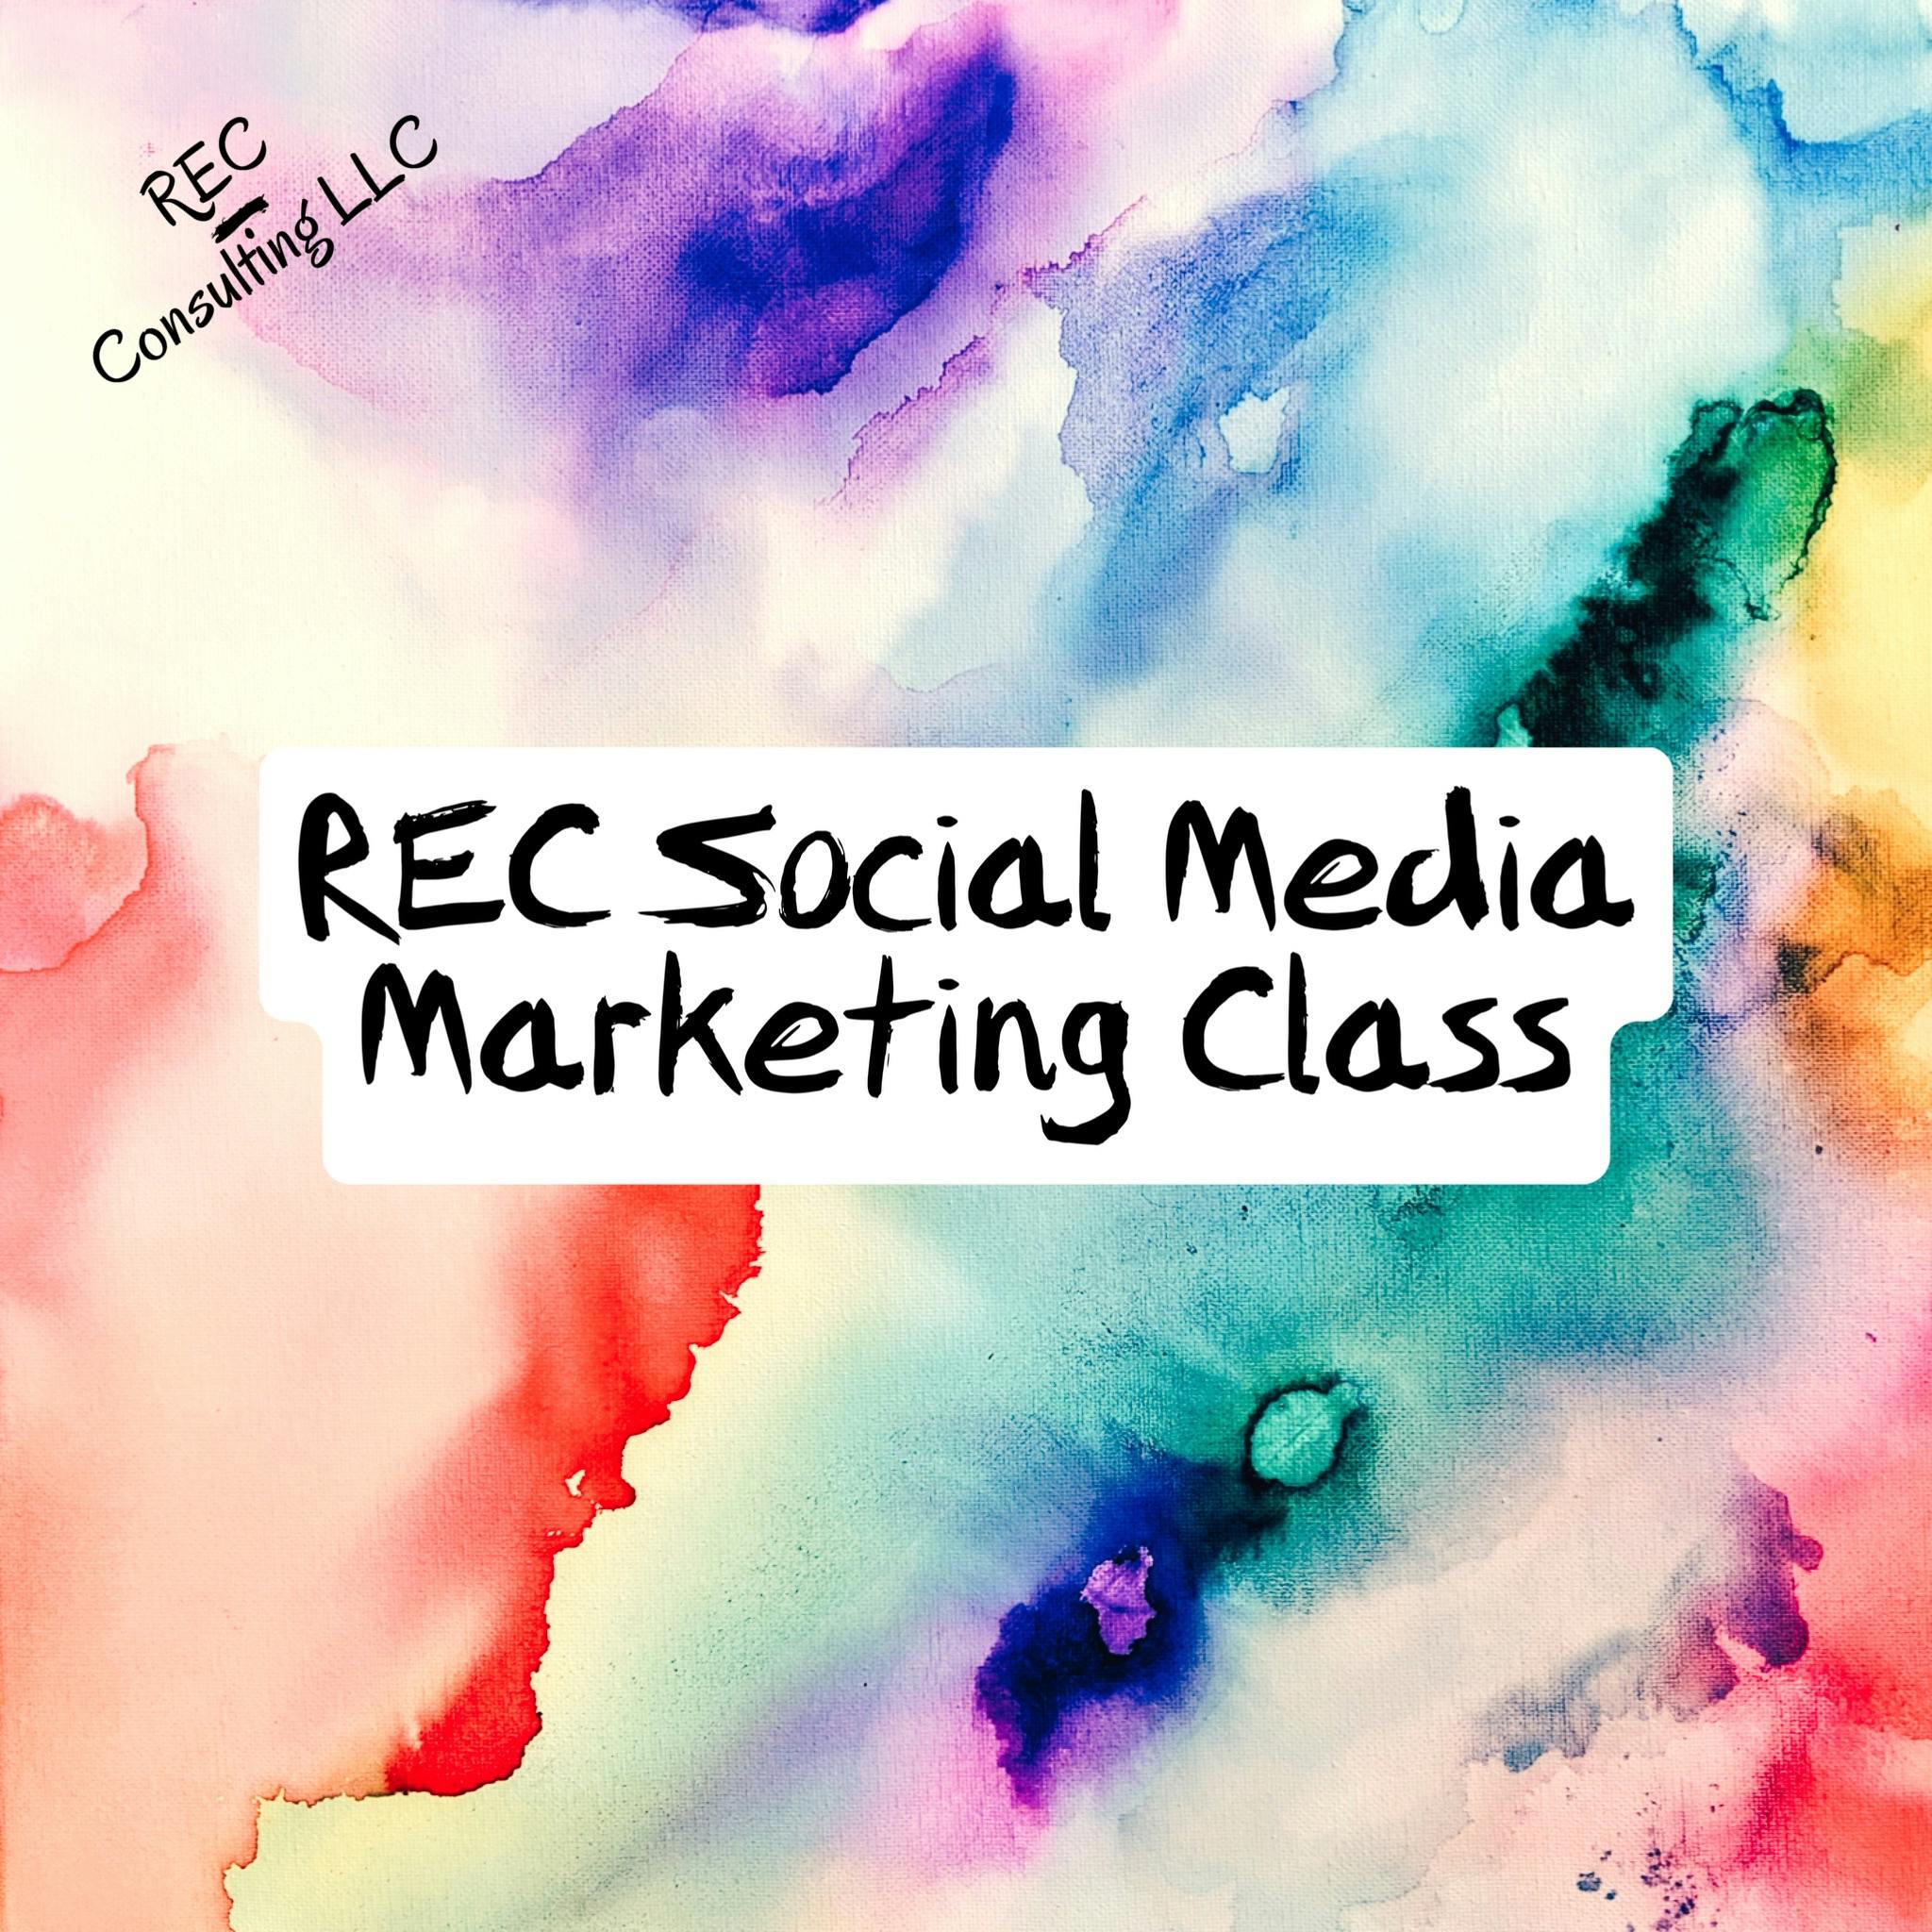 Social Media Marketing Class